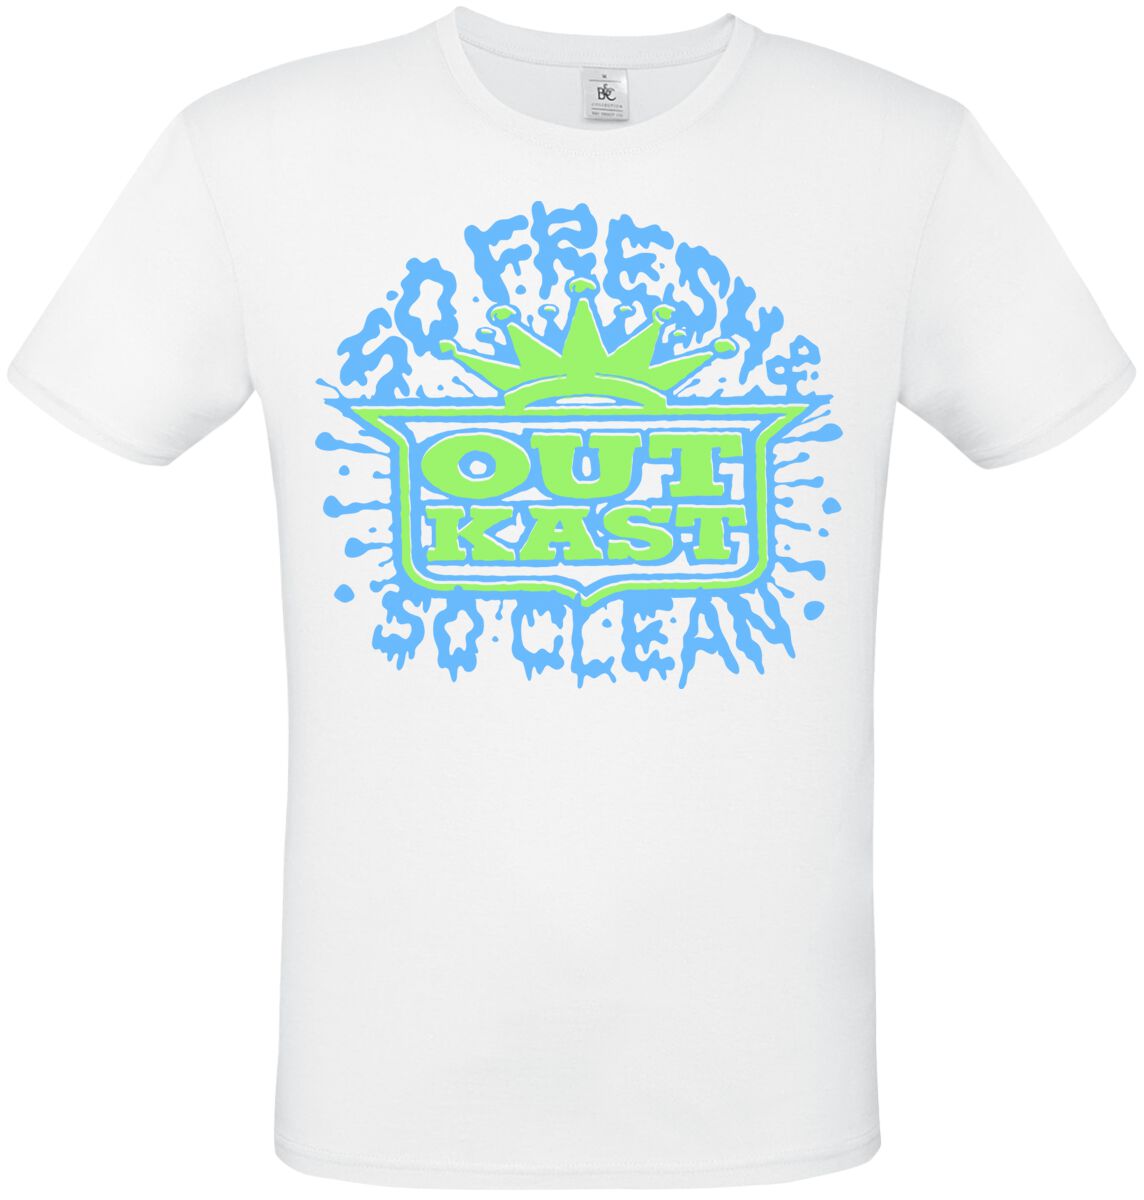 OutKast T-Shirt - So Fresh So Clean - S bis XL - für Männer - Größe M - weiß  - Lizenziertes Merchandise!